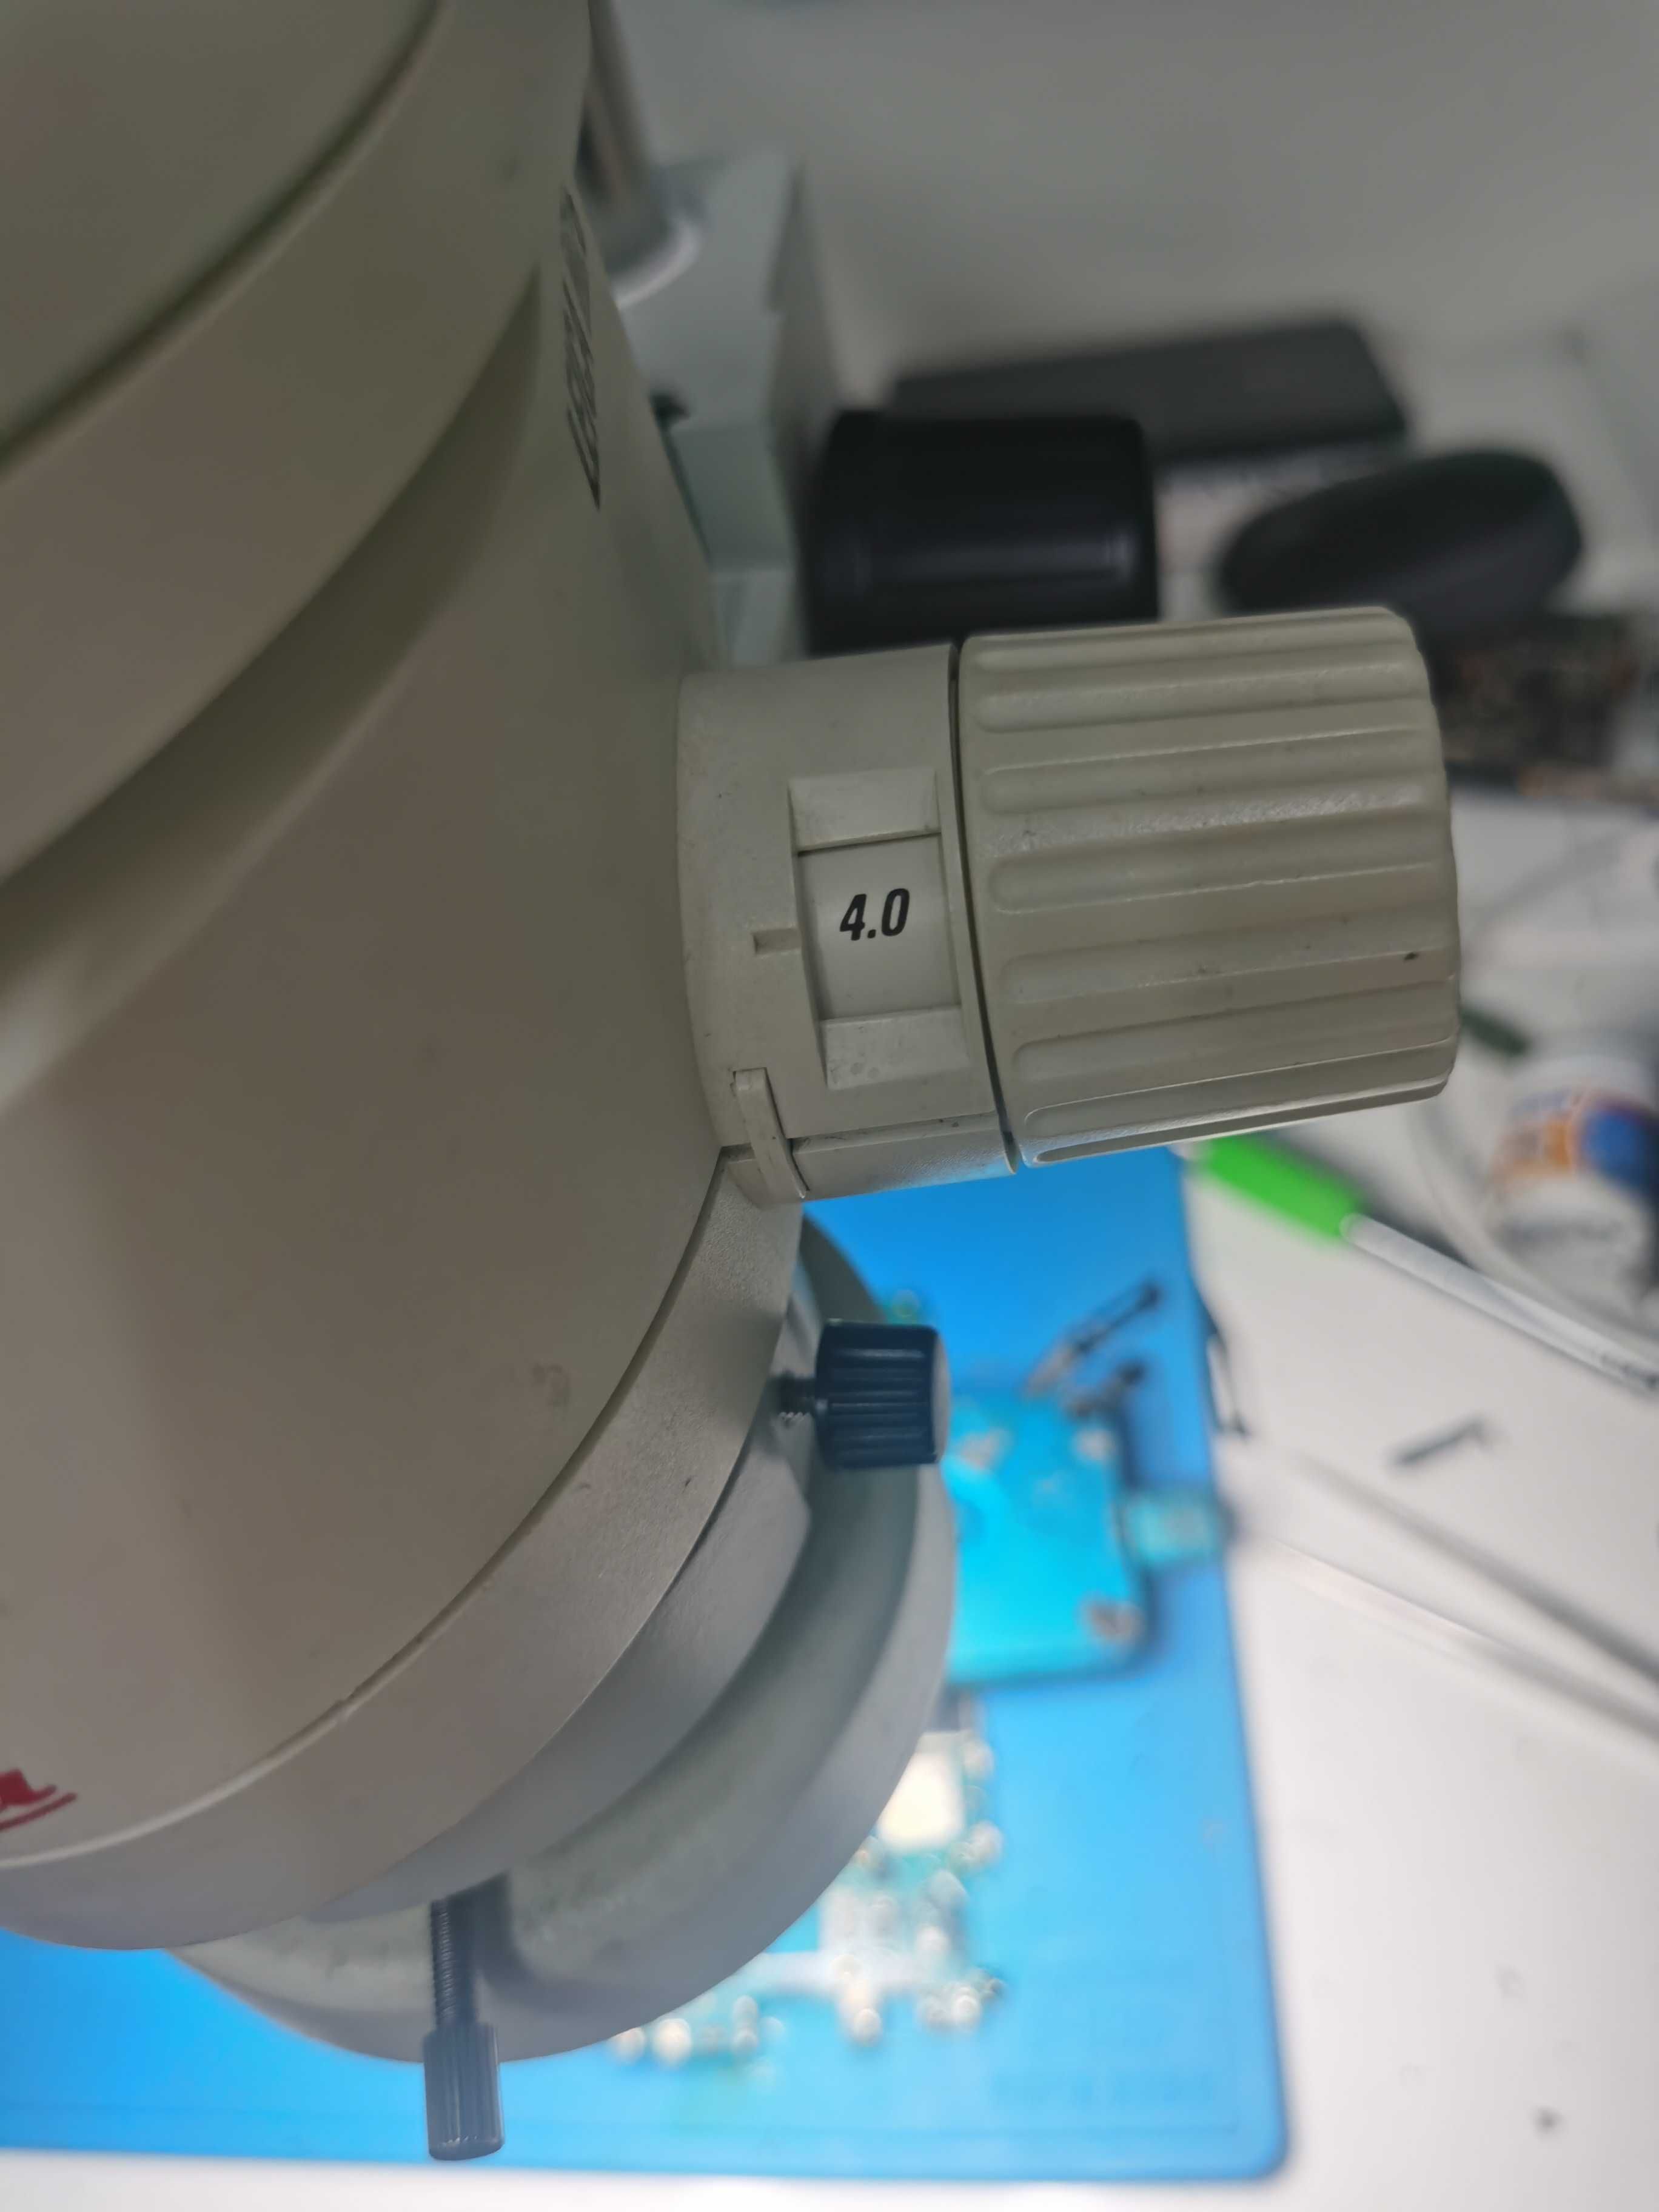 Leica mz6 микроскоп